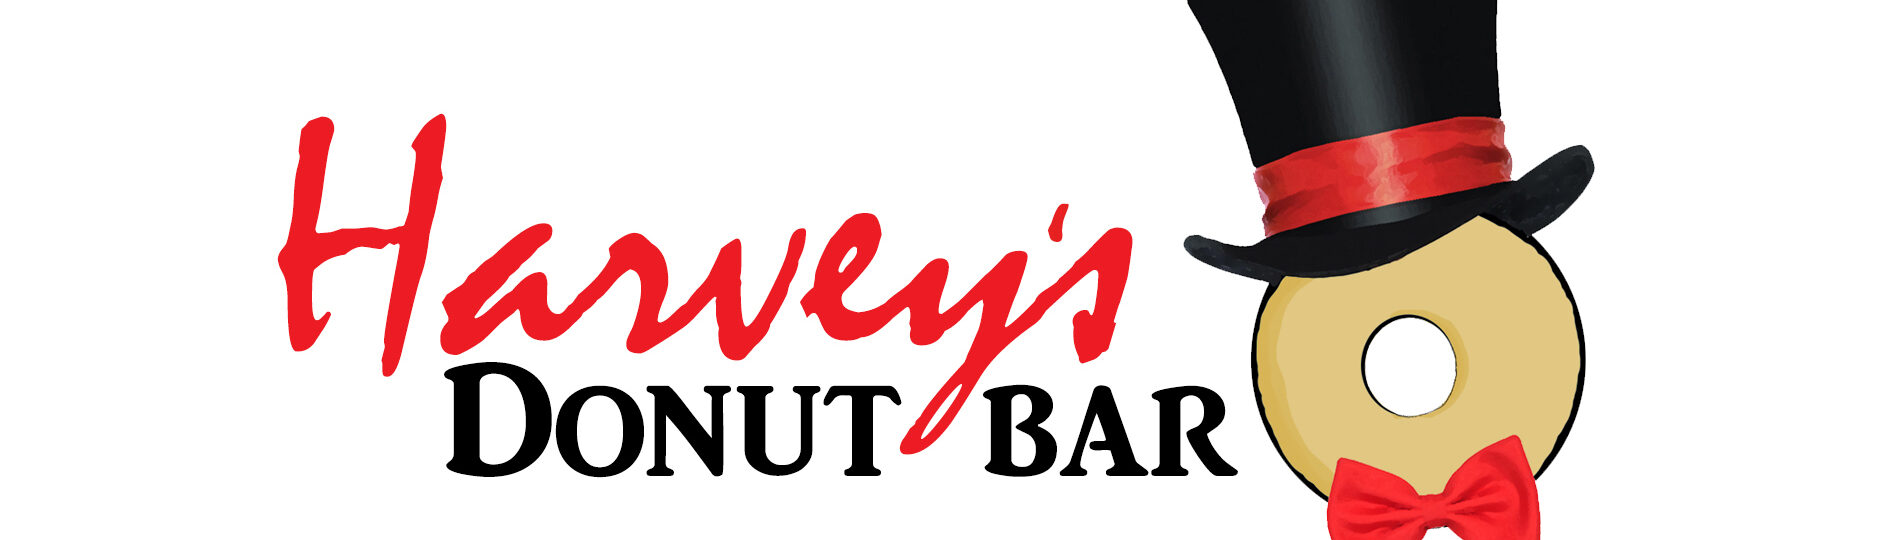 harvey's donut bar